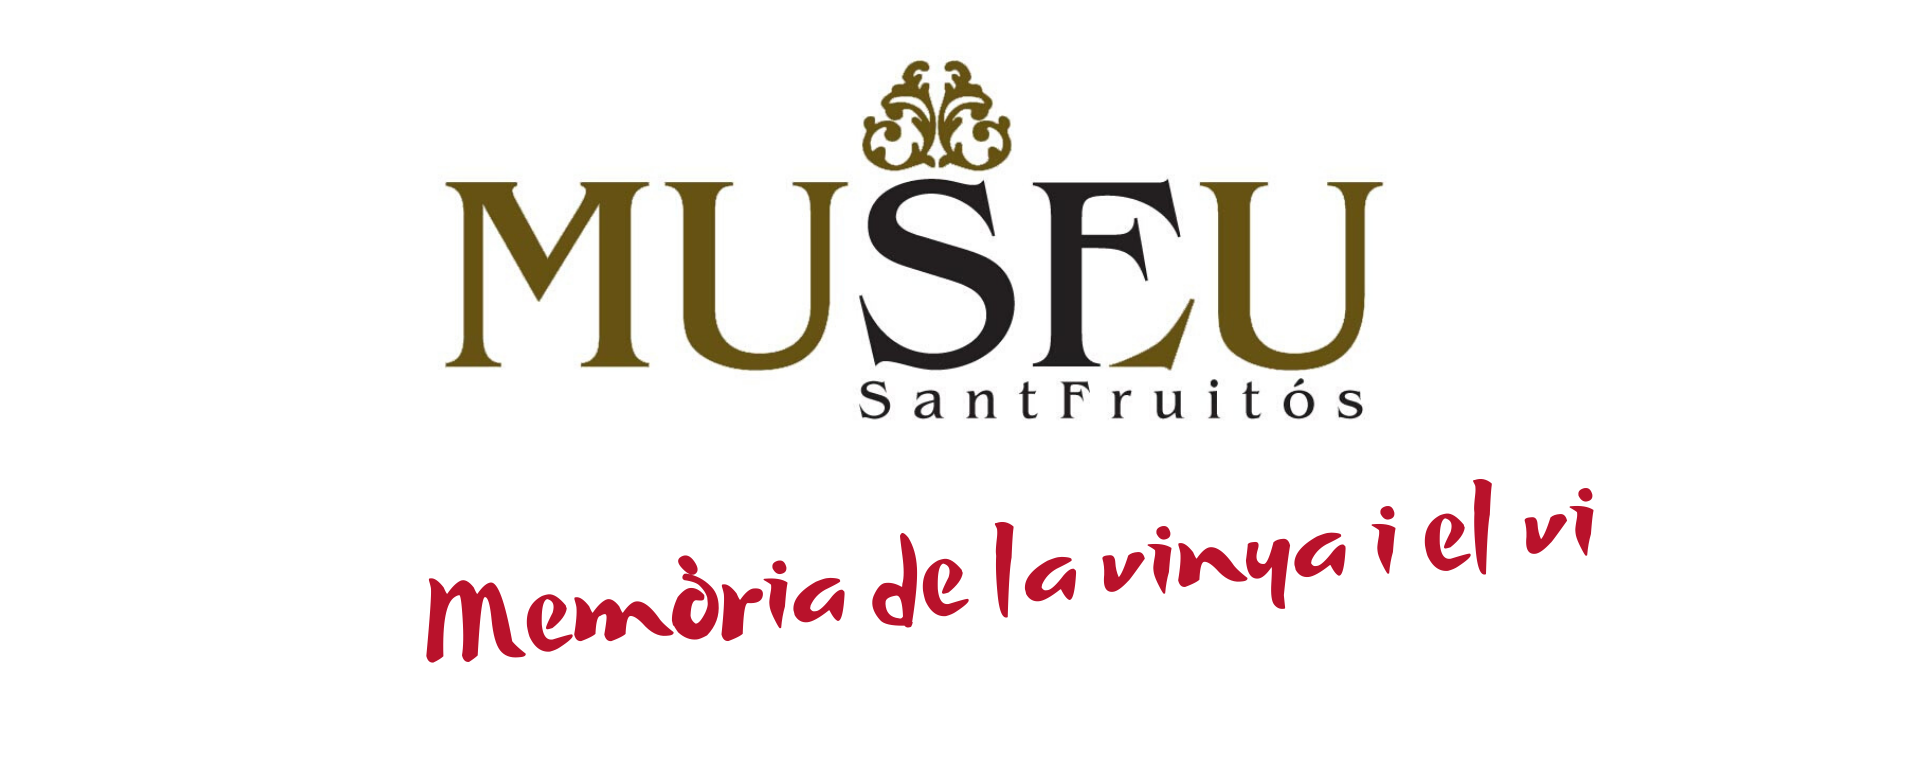 Museu de la memòria de la vinya i el vi